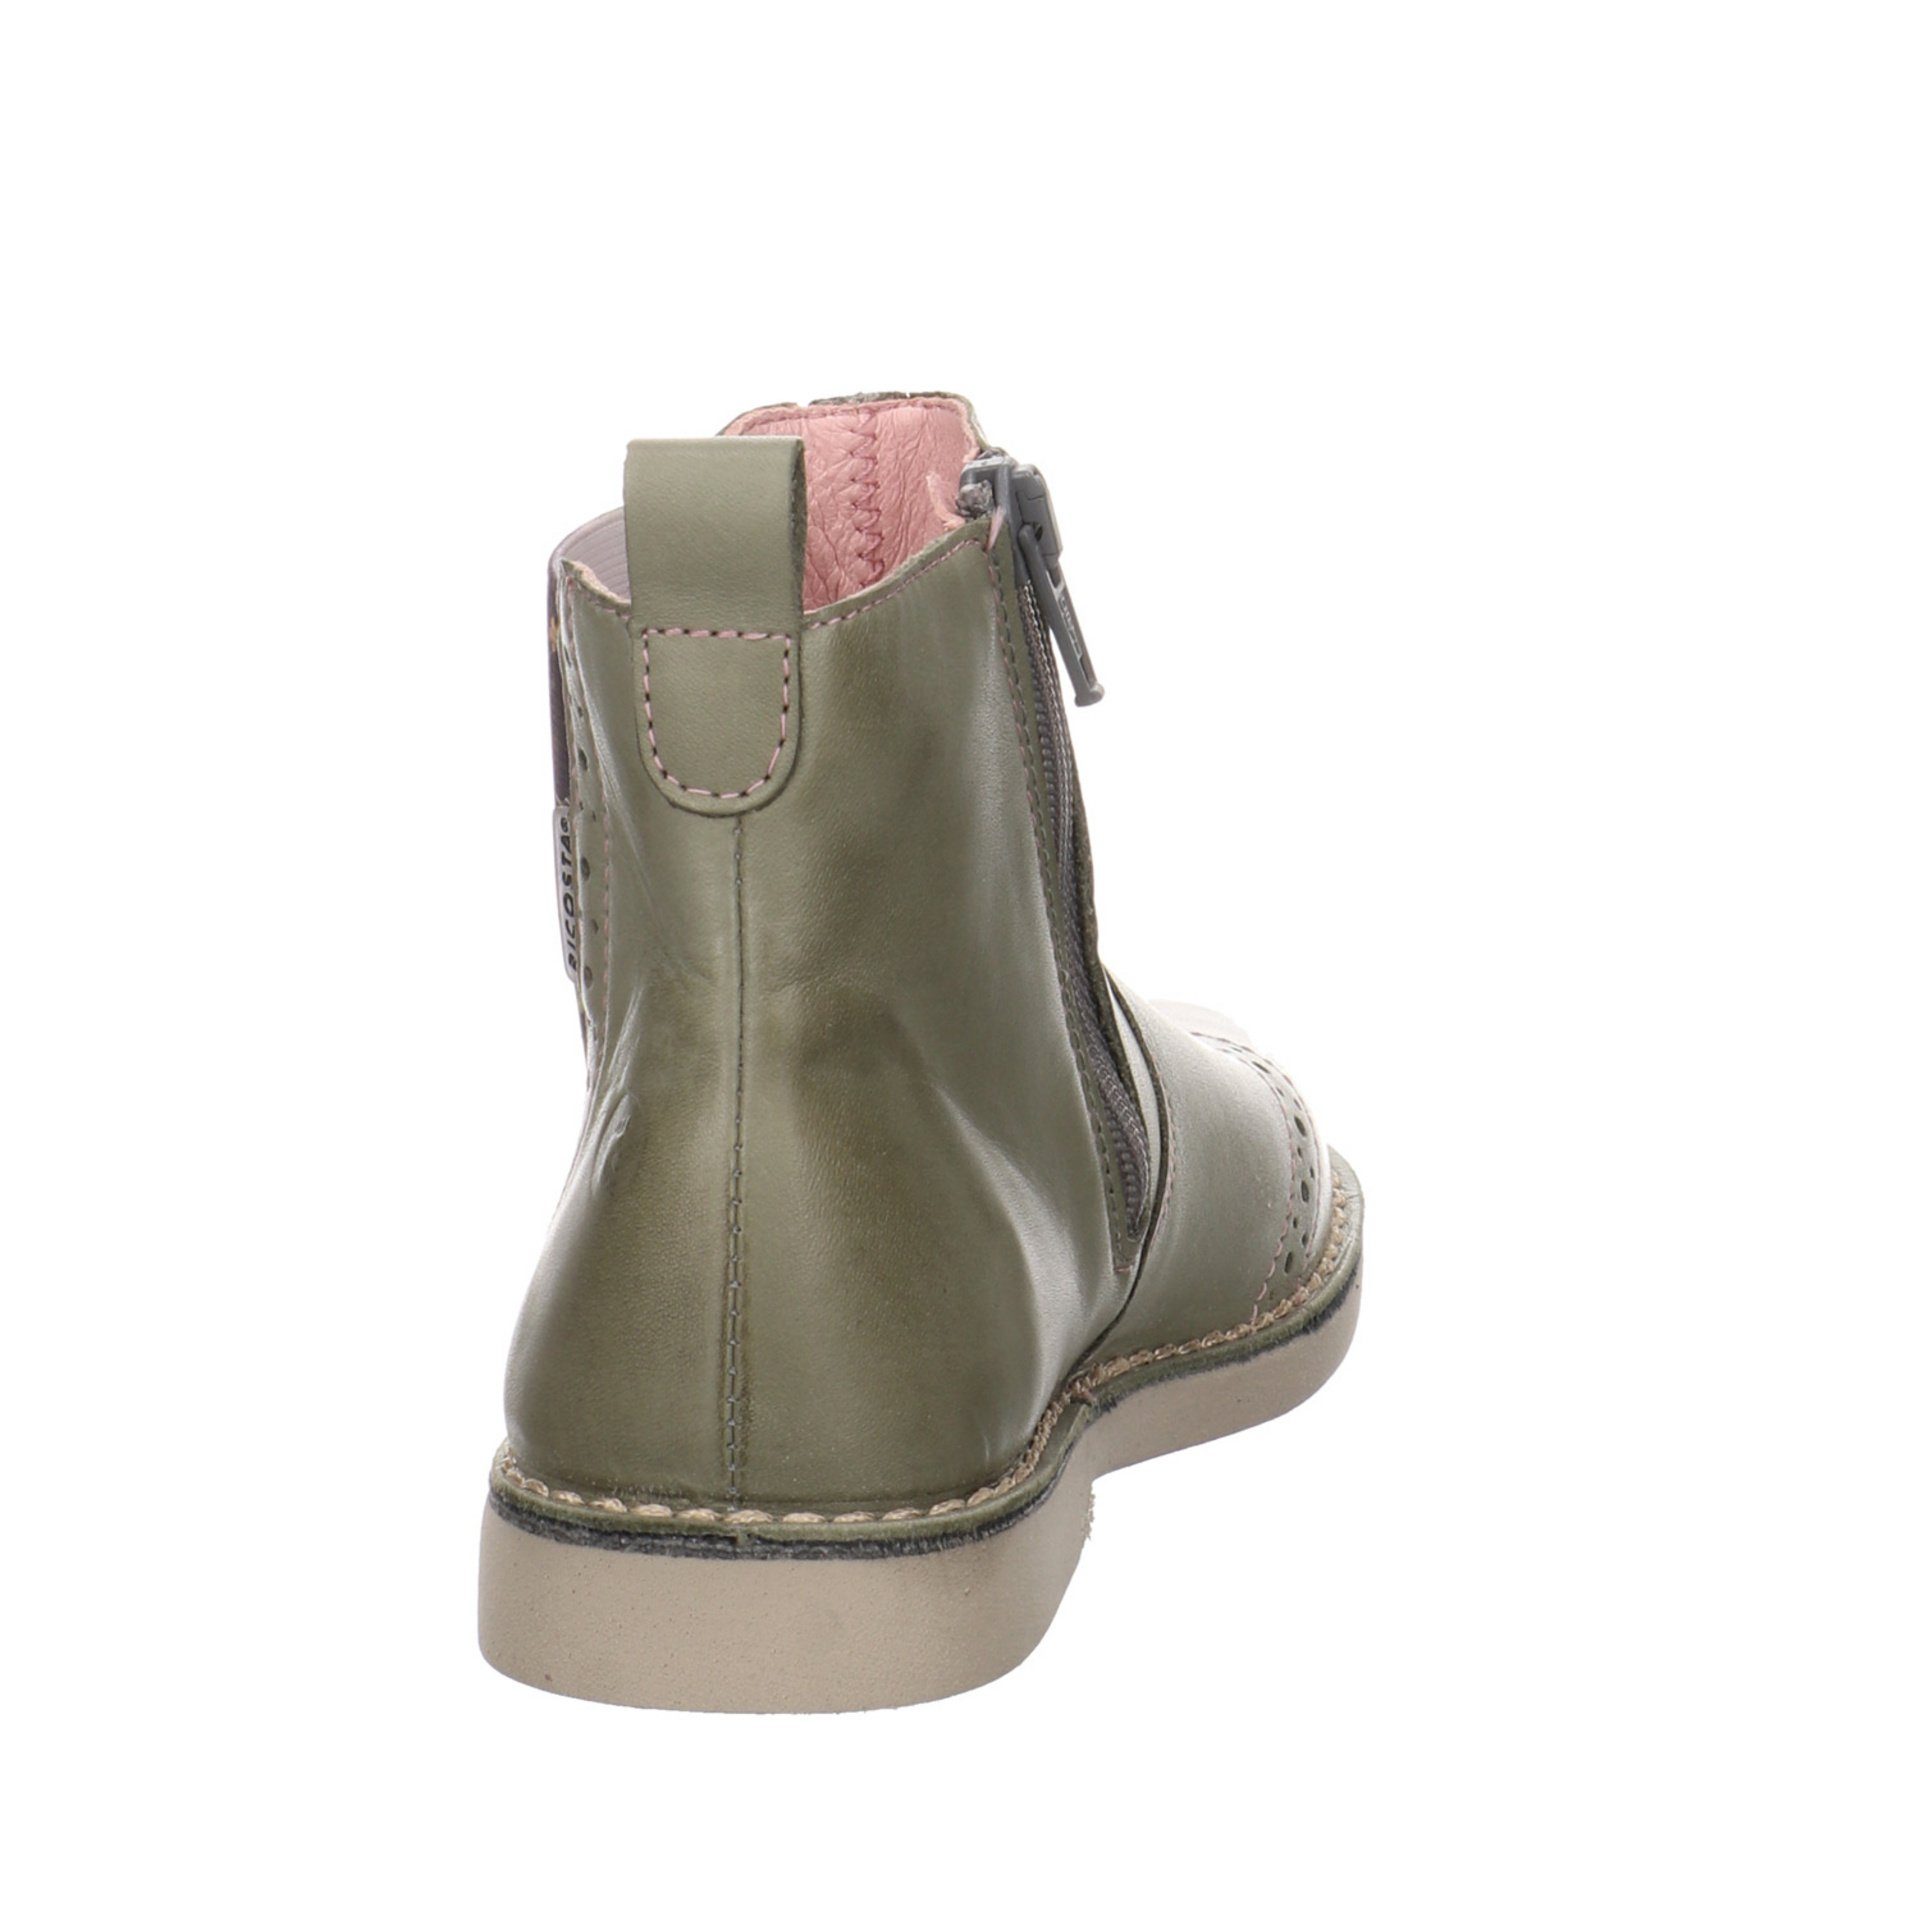 Ricosta Mädchen Stiefel Dallas Boots Chelsea Glattleder Stiefelette (540) eukalyptus/Blume Schuhe